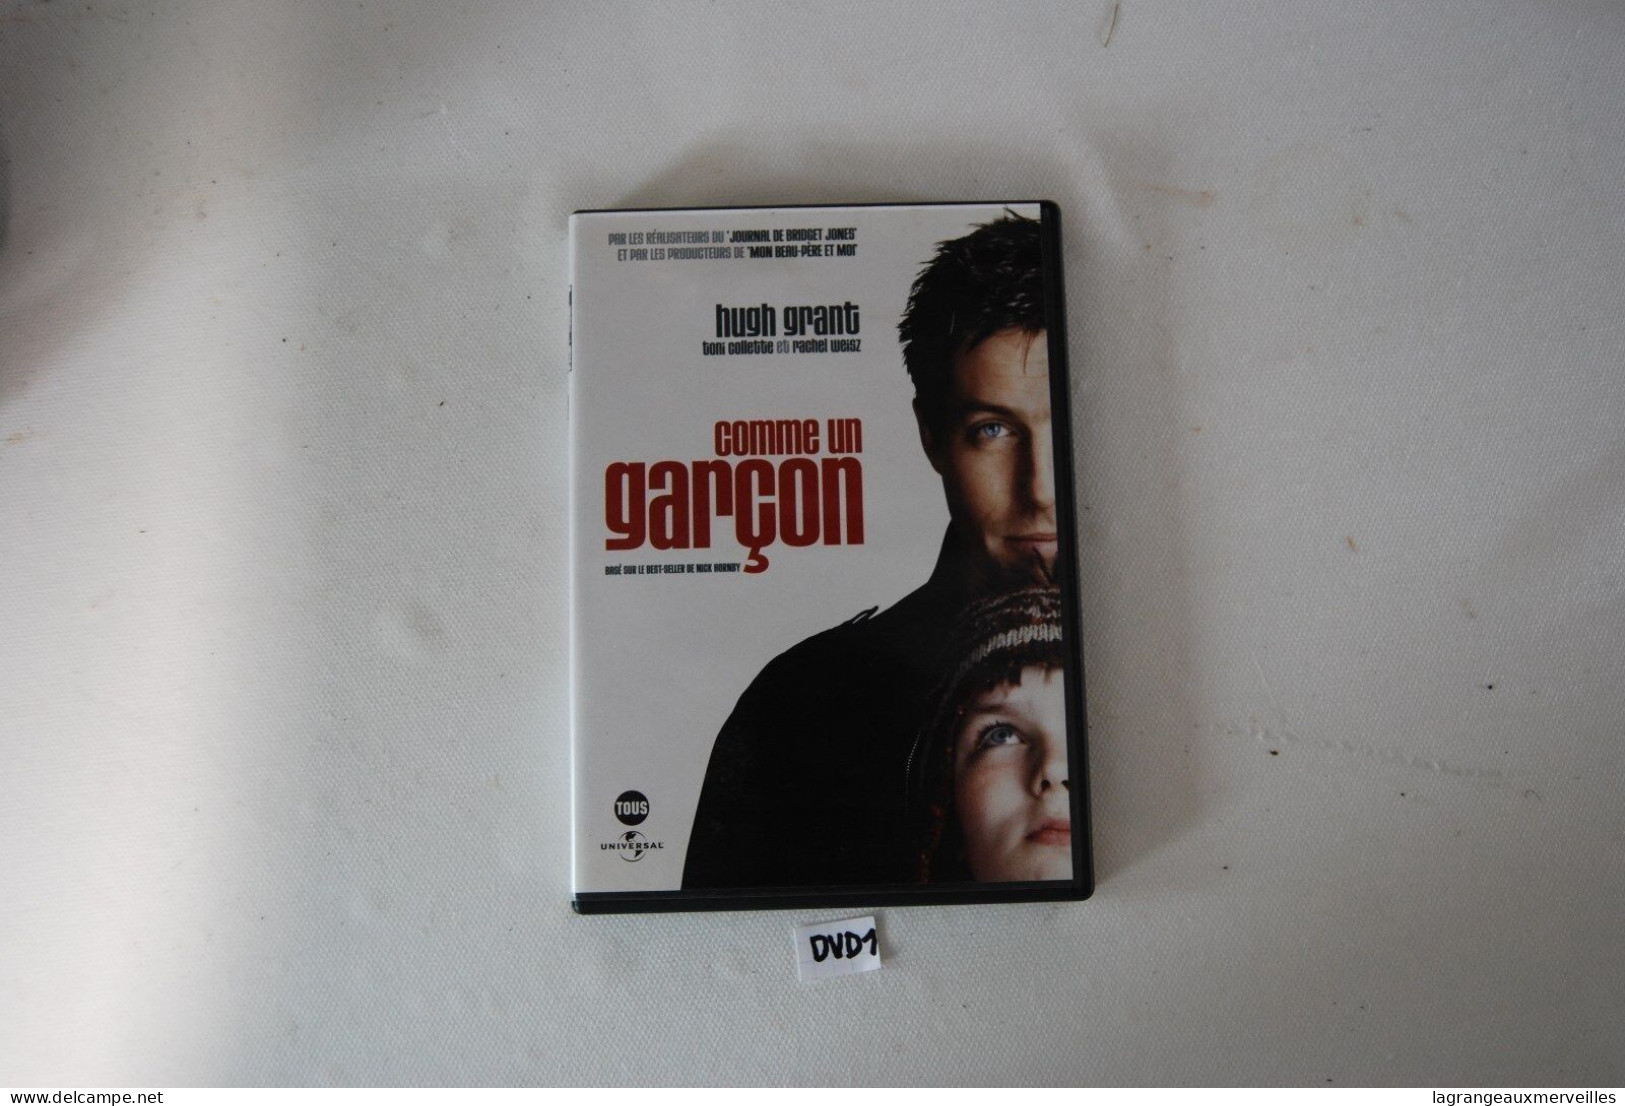 DVD 1 - COMME UN GARCON - HUGH GRANT - Enfants & Famille